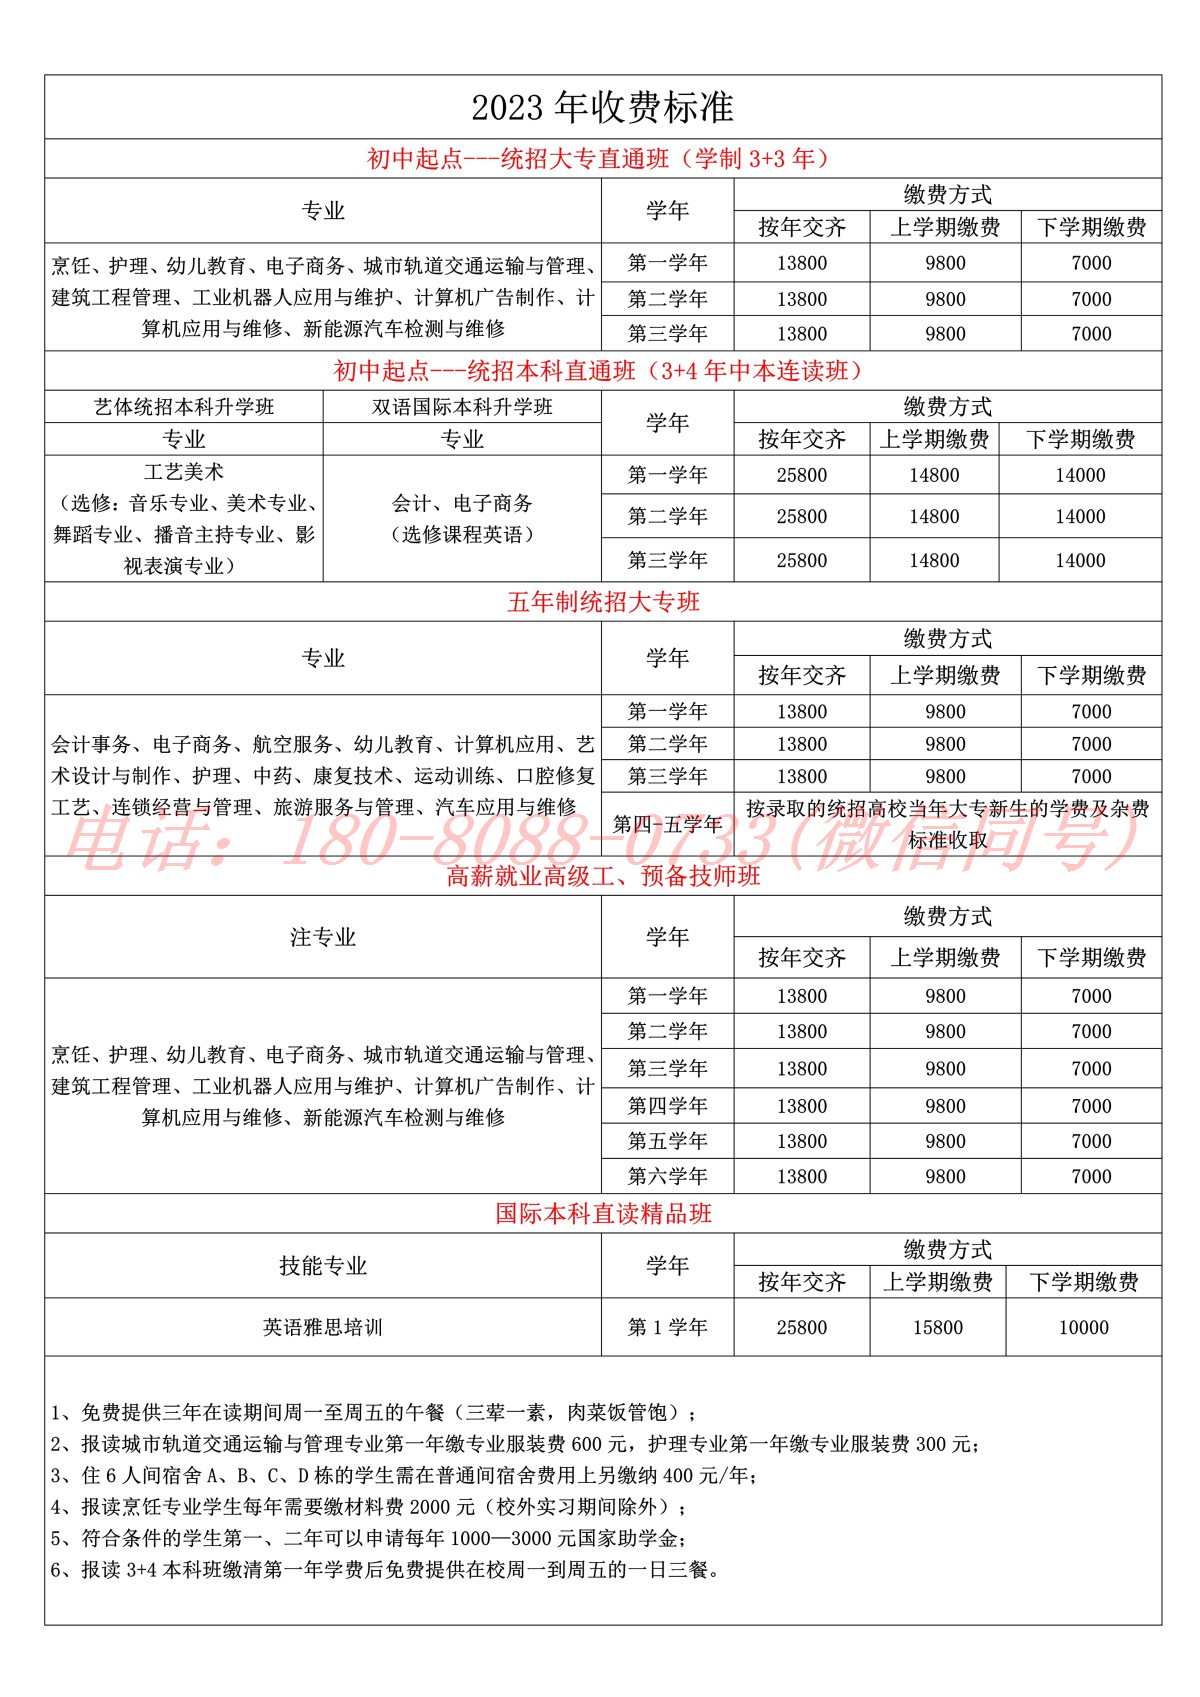 四川五月花技师学院2023年收费标准